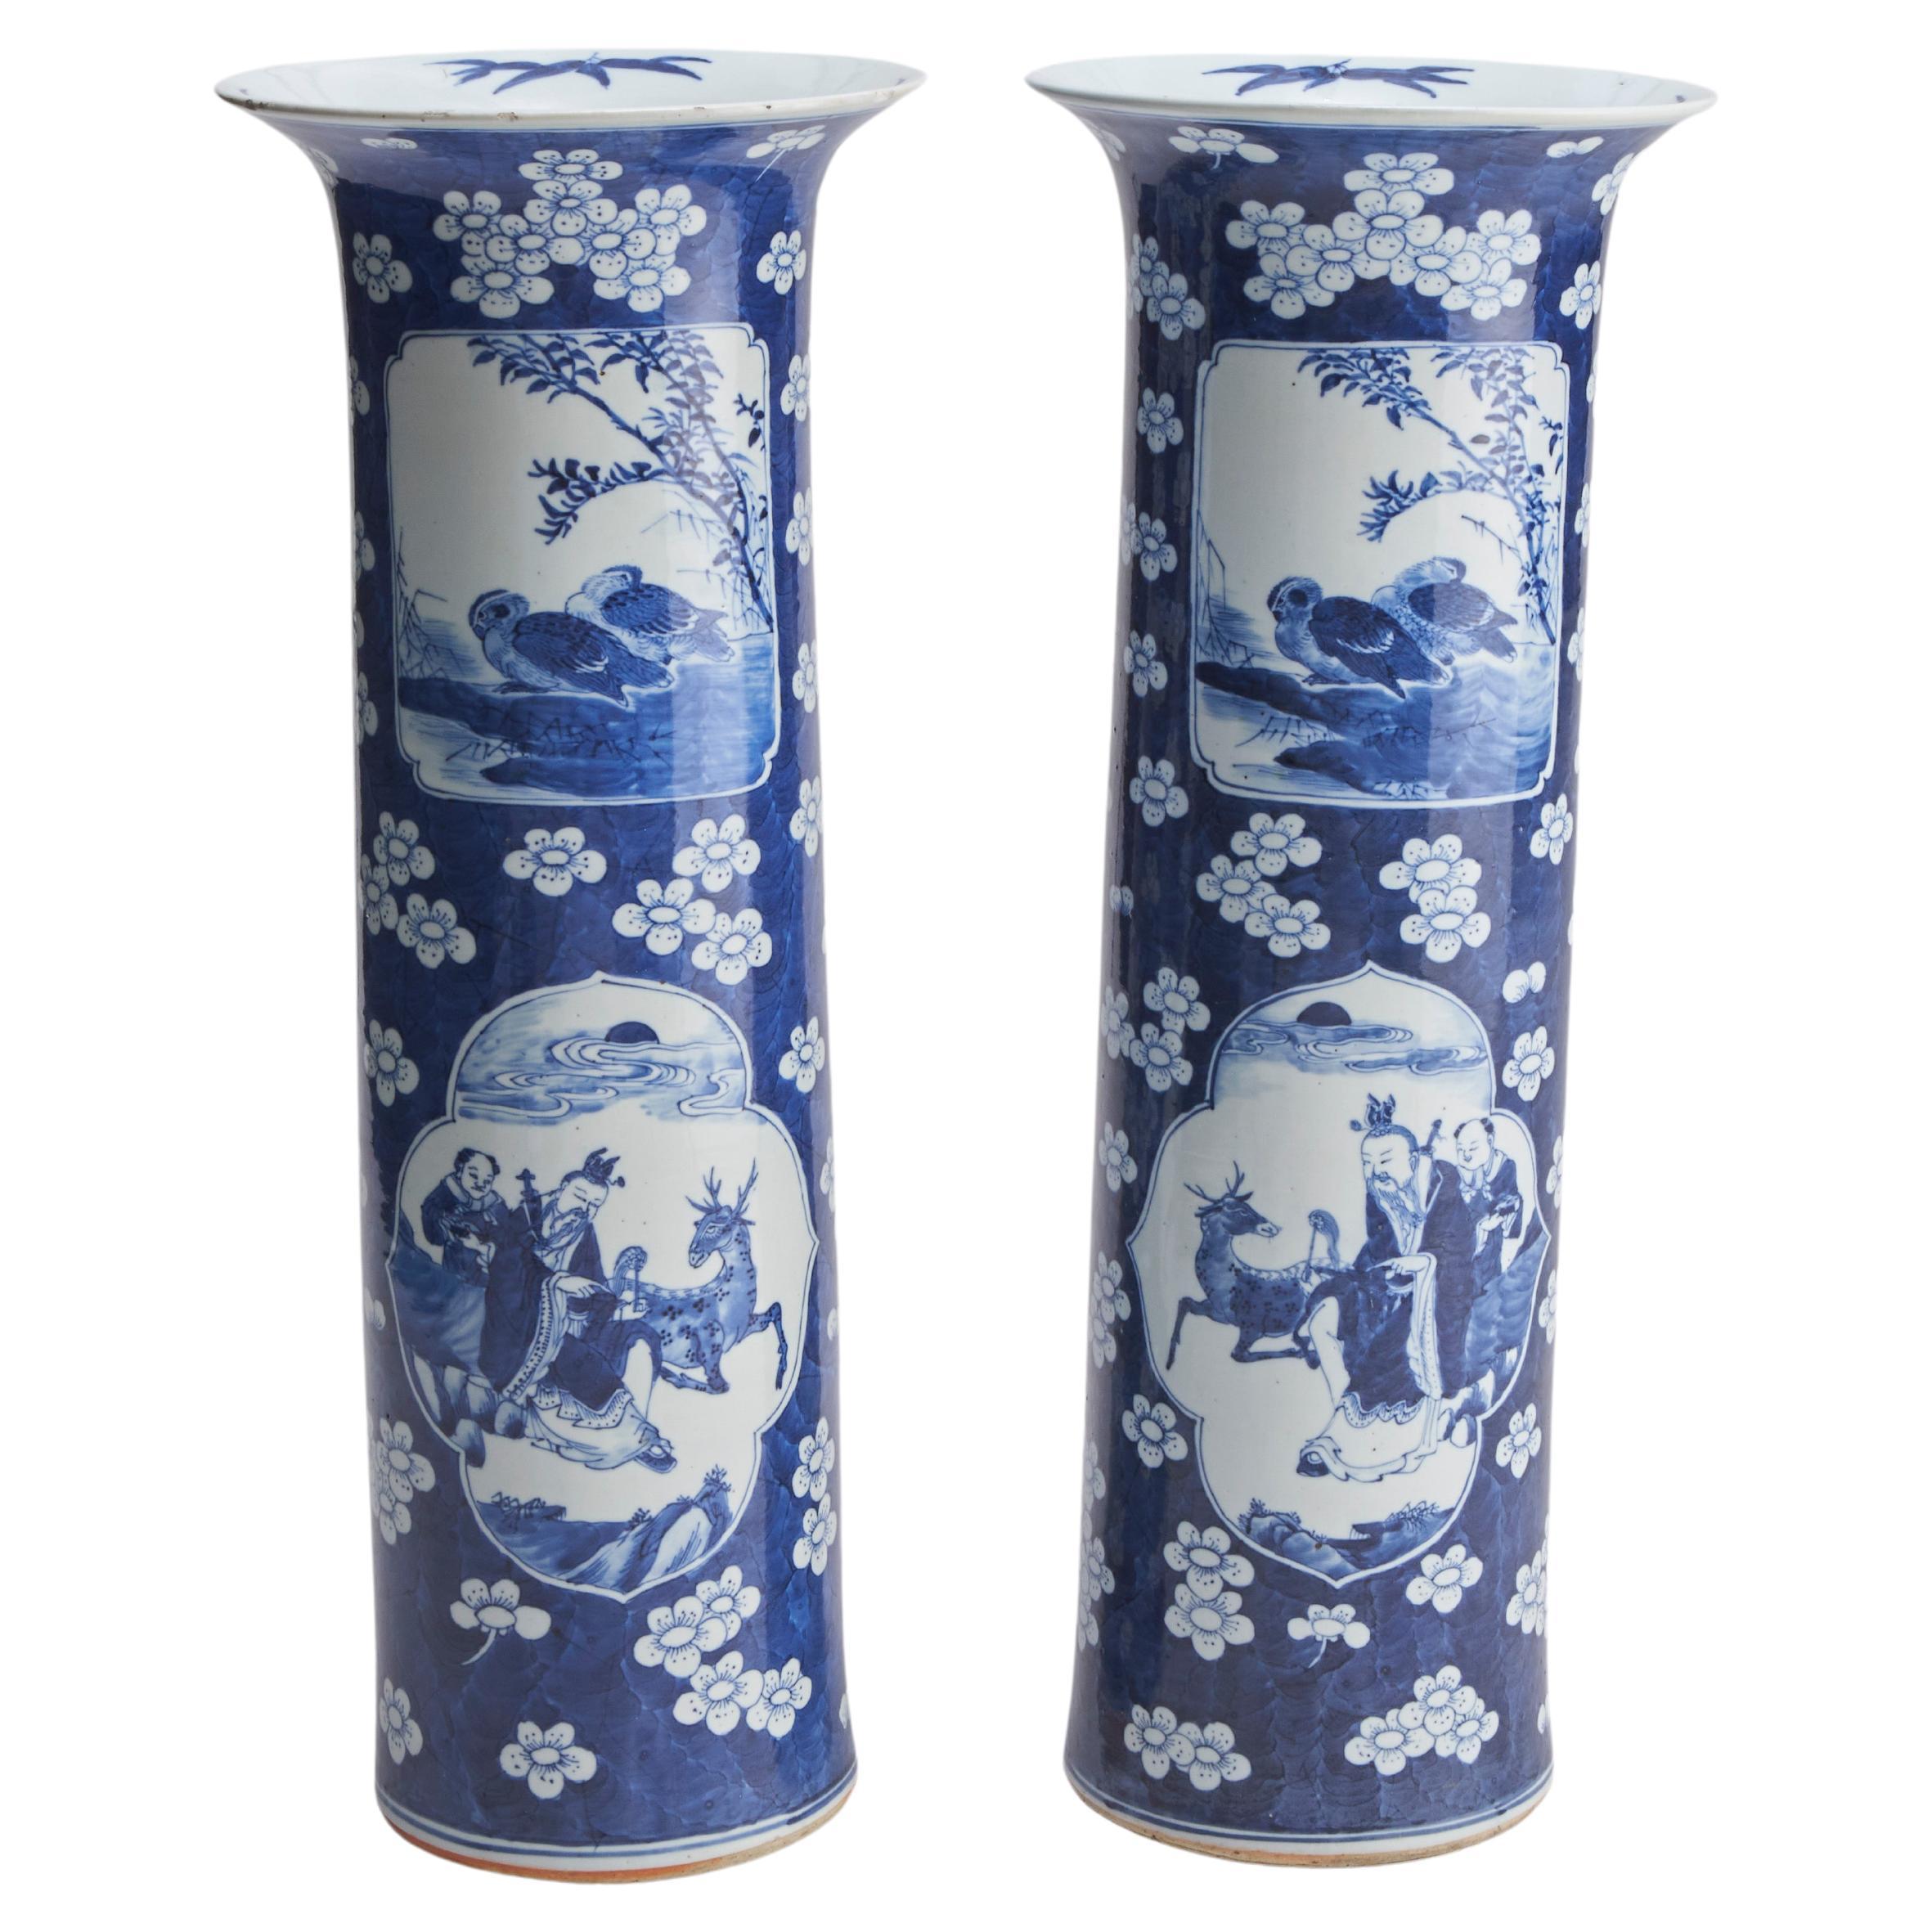 Paar chinesische Vasen mit blauen und weißen Ärmeln aus dem neunzehnten Jahrhundert (ca. 1870)